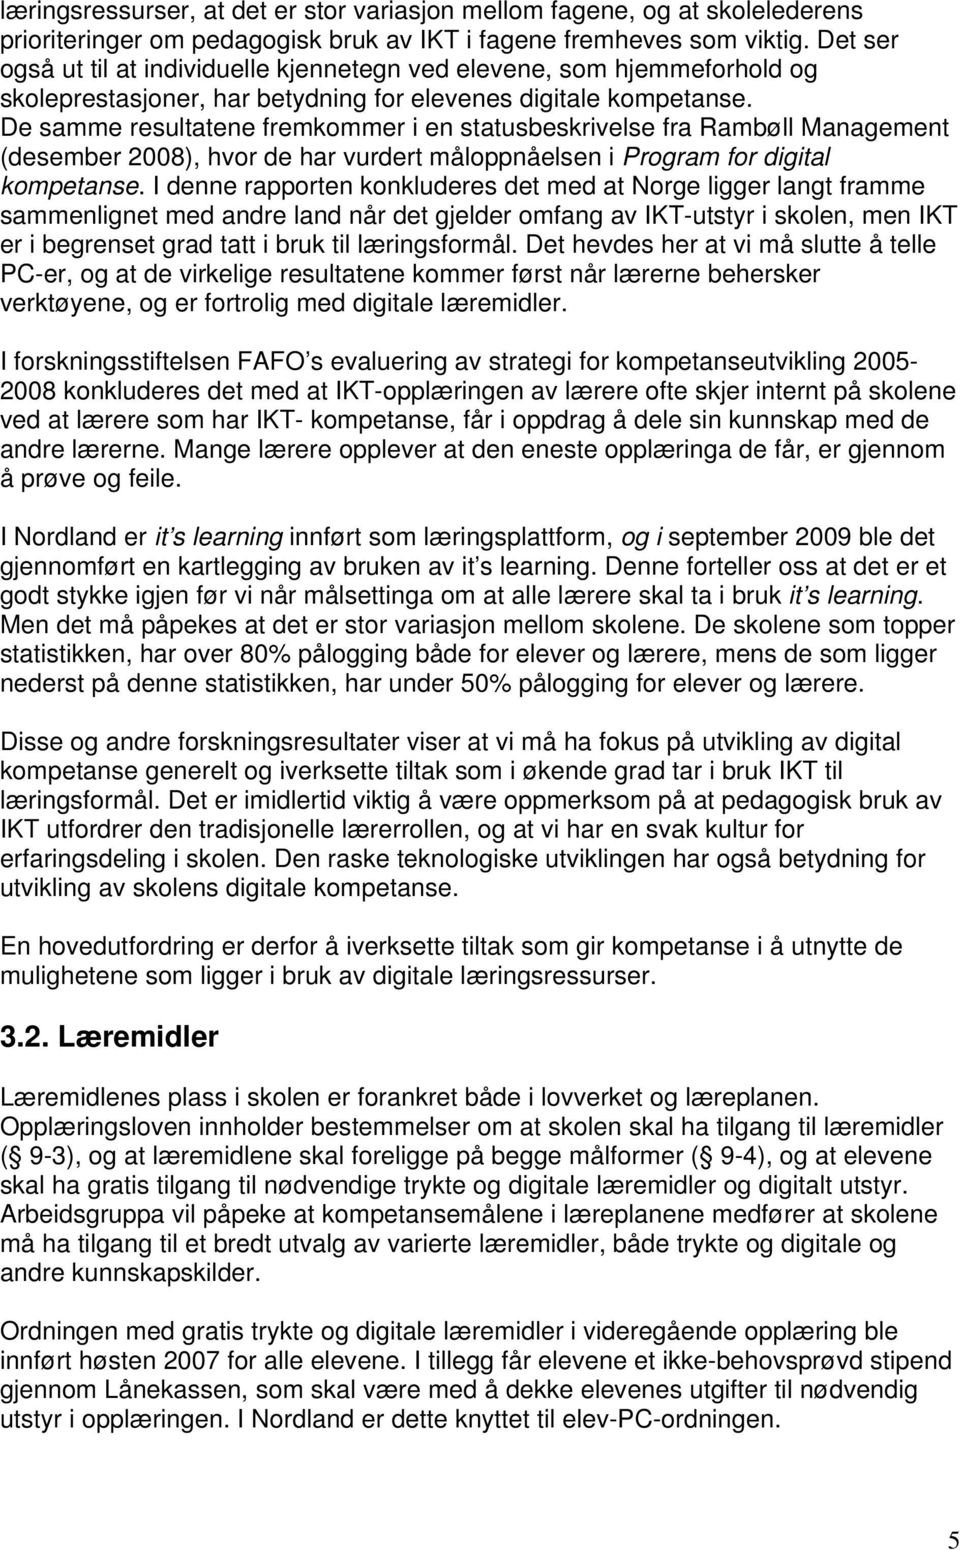 De samme resultatene fremkommer i en statusbeskrivelse fra Rambøll Management (desember 2008), hvor de har vurdert måloppnåelsen i Program for digital kompetanse.